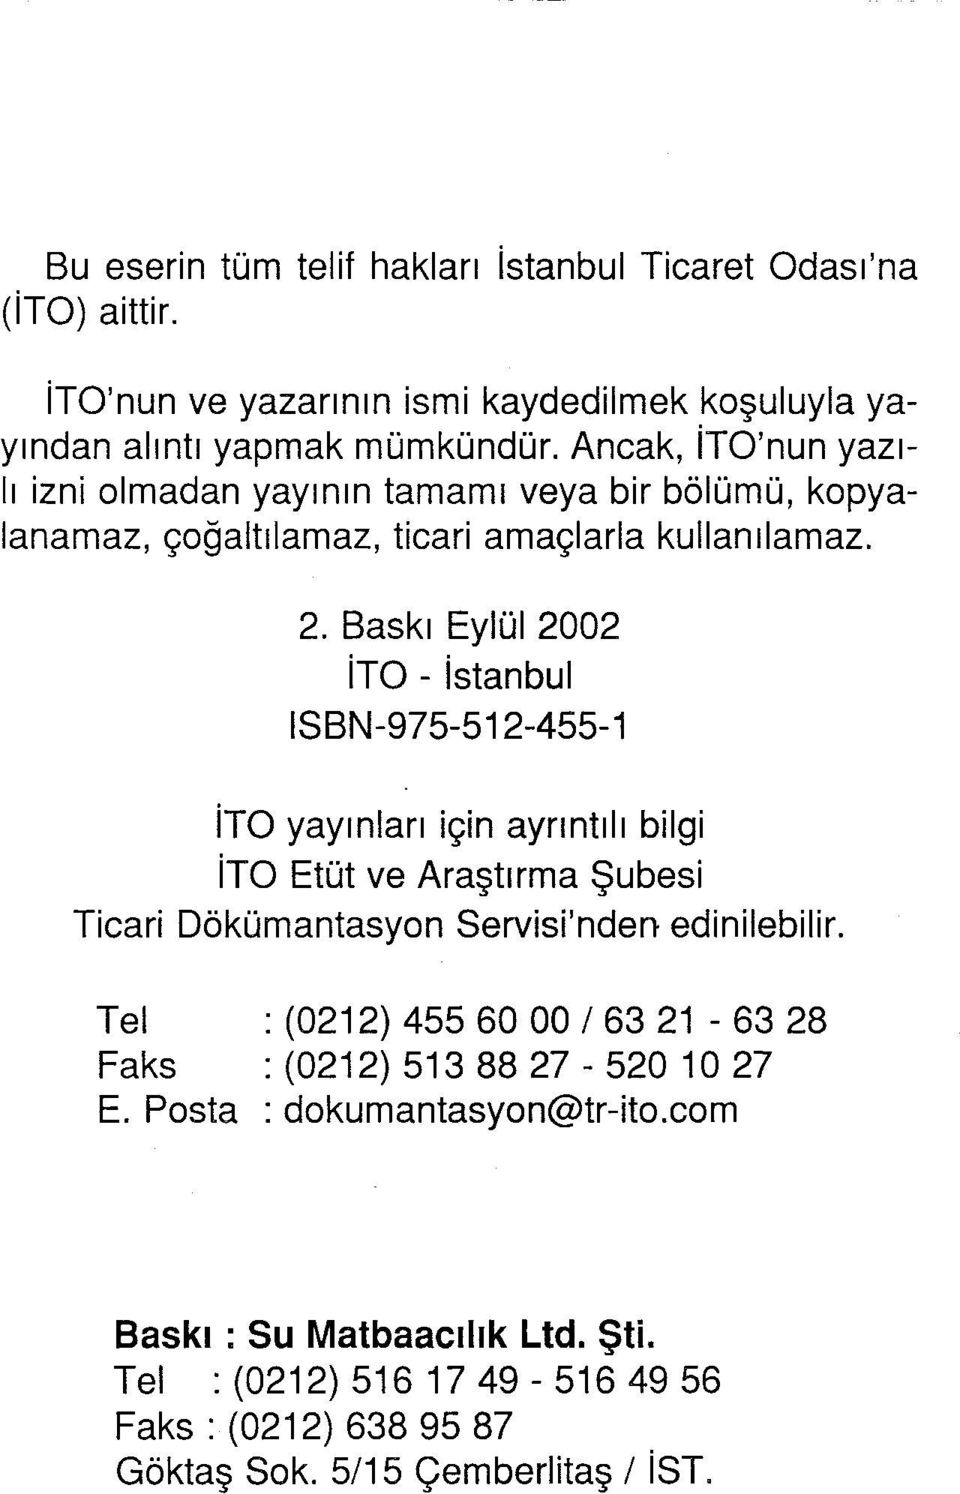 Baskı Eylül 2002 İTO - İstanbul ISBN-975-512-455-1 İTO yayınları için aynntılı bilgi İTO Etüt ve Araştırma Şubesi Ticari Dokümantasyon Servisi'nden edinilebilir.